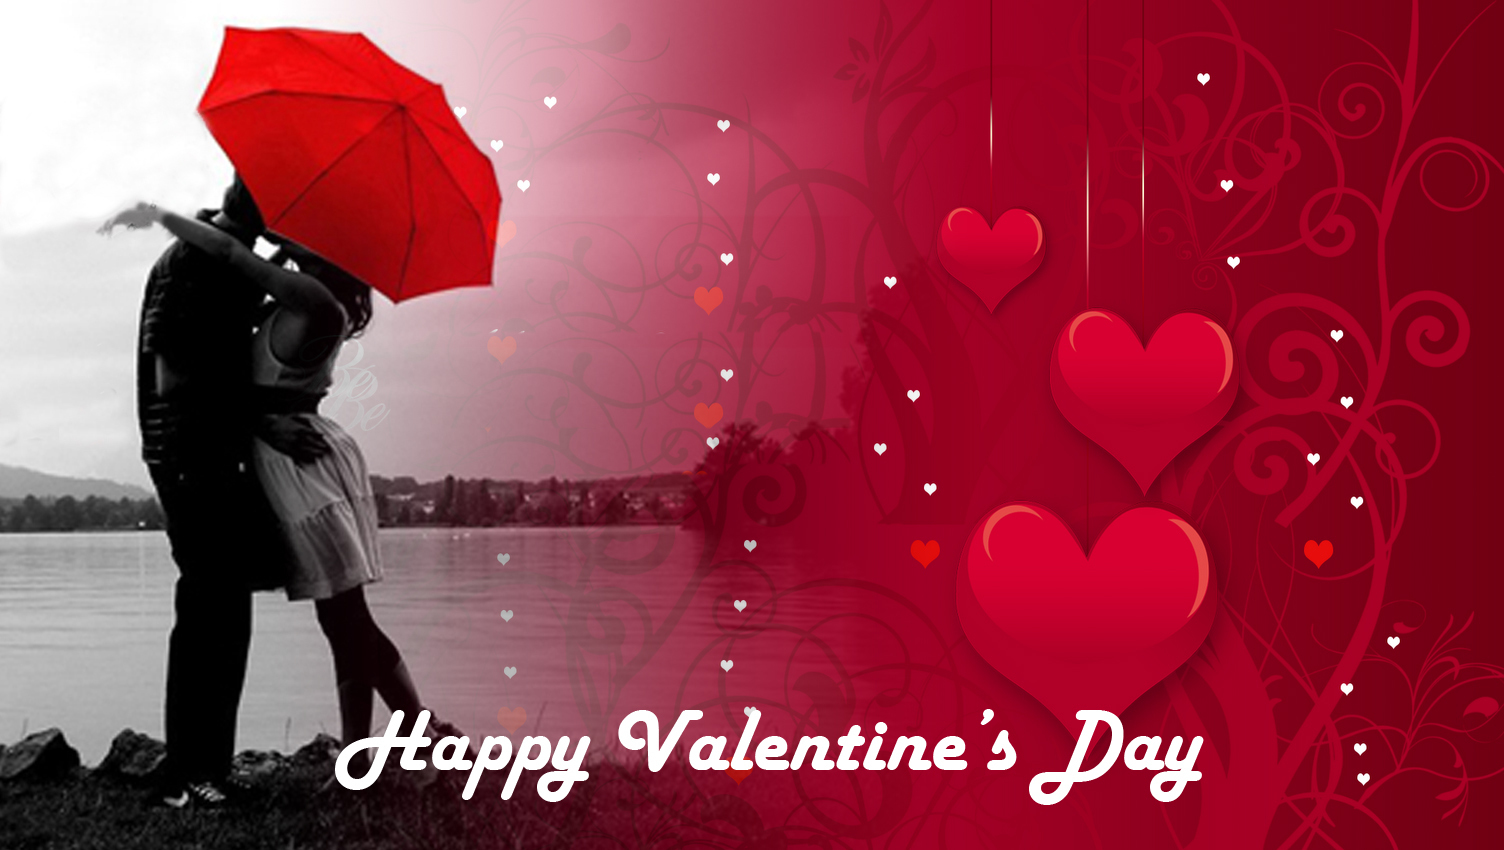 Bạn đang băn khoăn tìm lời chúc mừng Valentine hoàn hảo để gửi đến người ấy? Hãy tham khảo những câu nói ngọt ngào, lãng mạn và đầy tình cảm nhất trên những hình ảnh lời chúc Valentine được chia sẻ trên mạng xã hội.